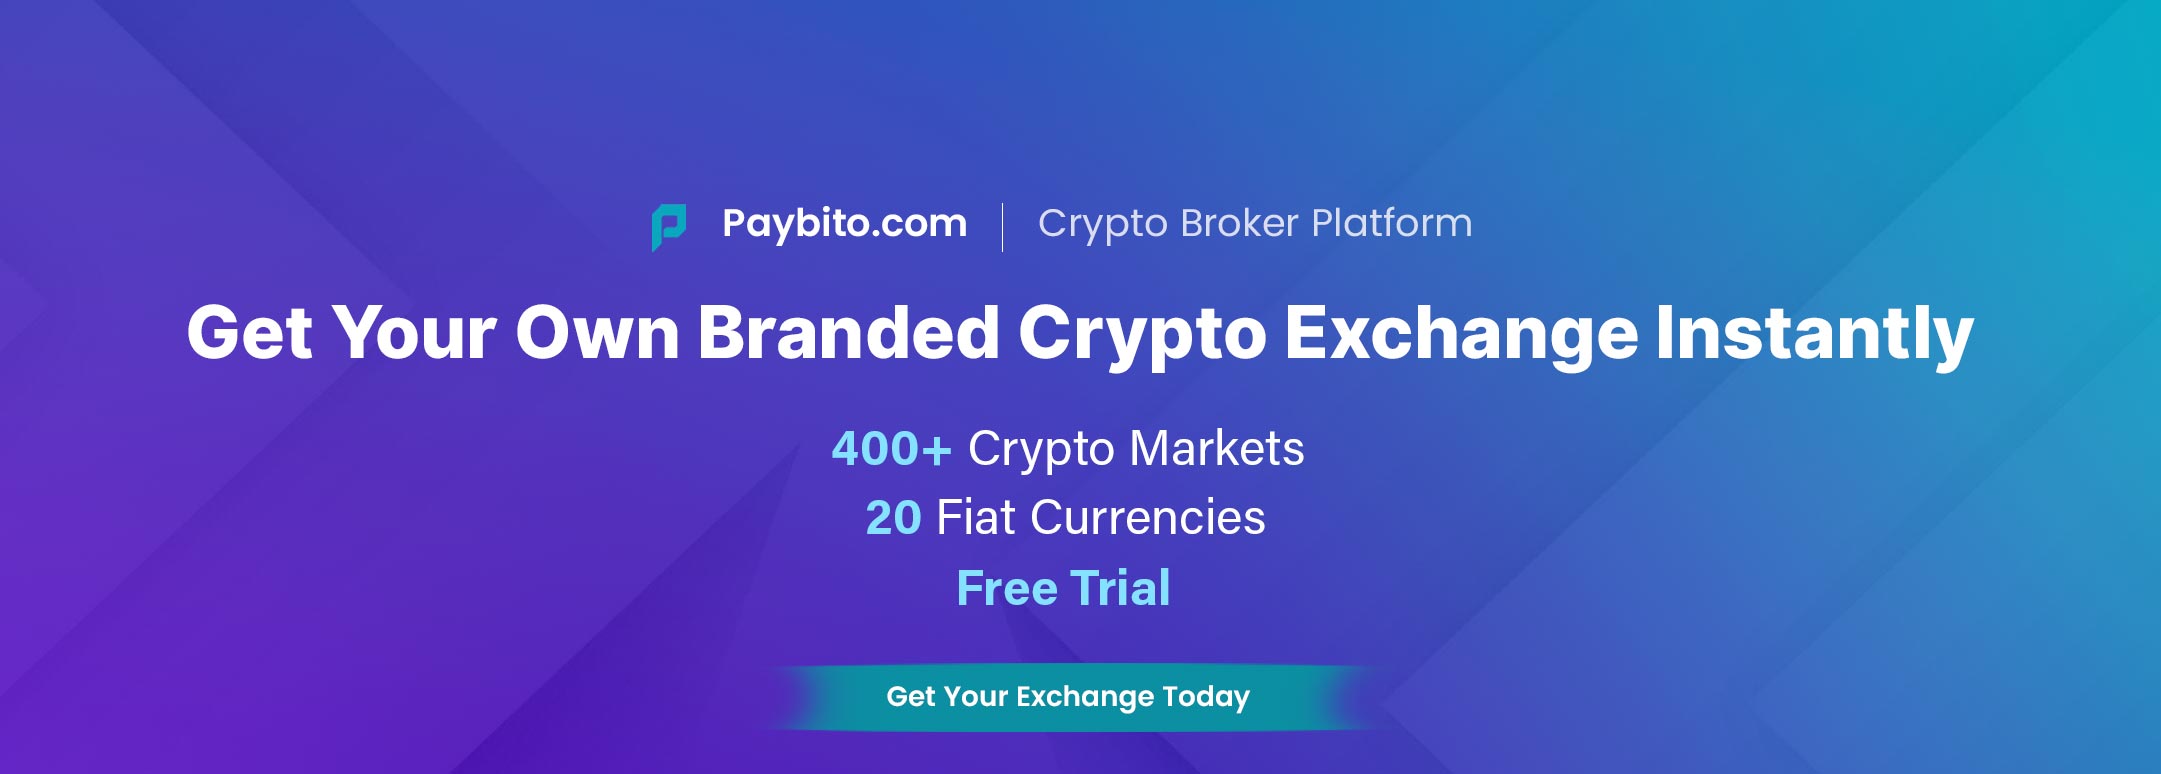 Crypto Broker Platform